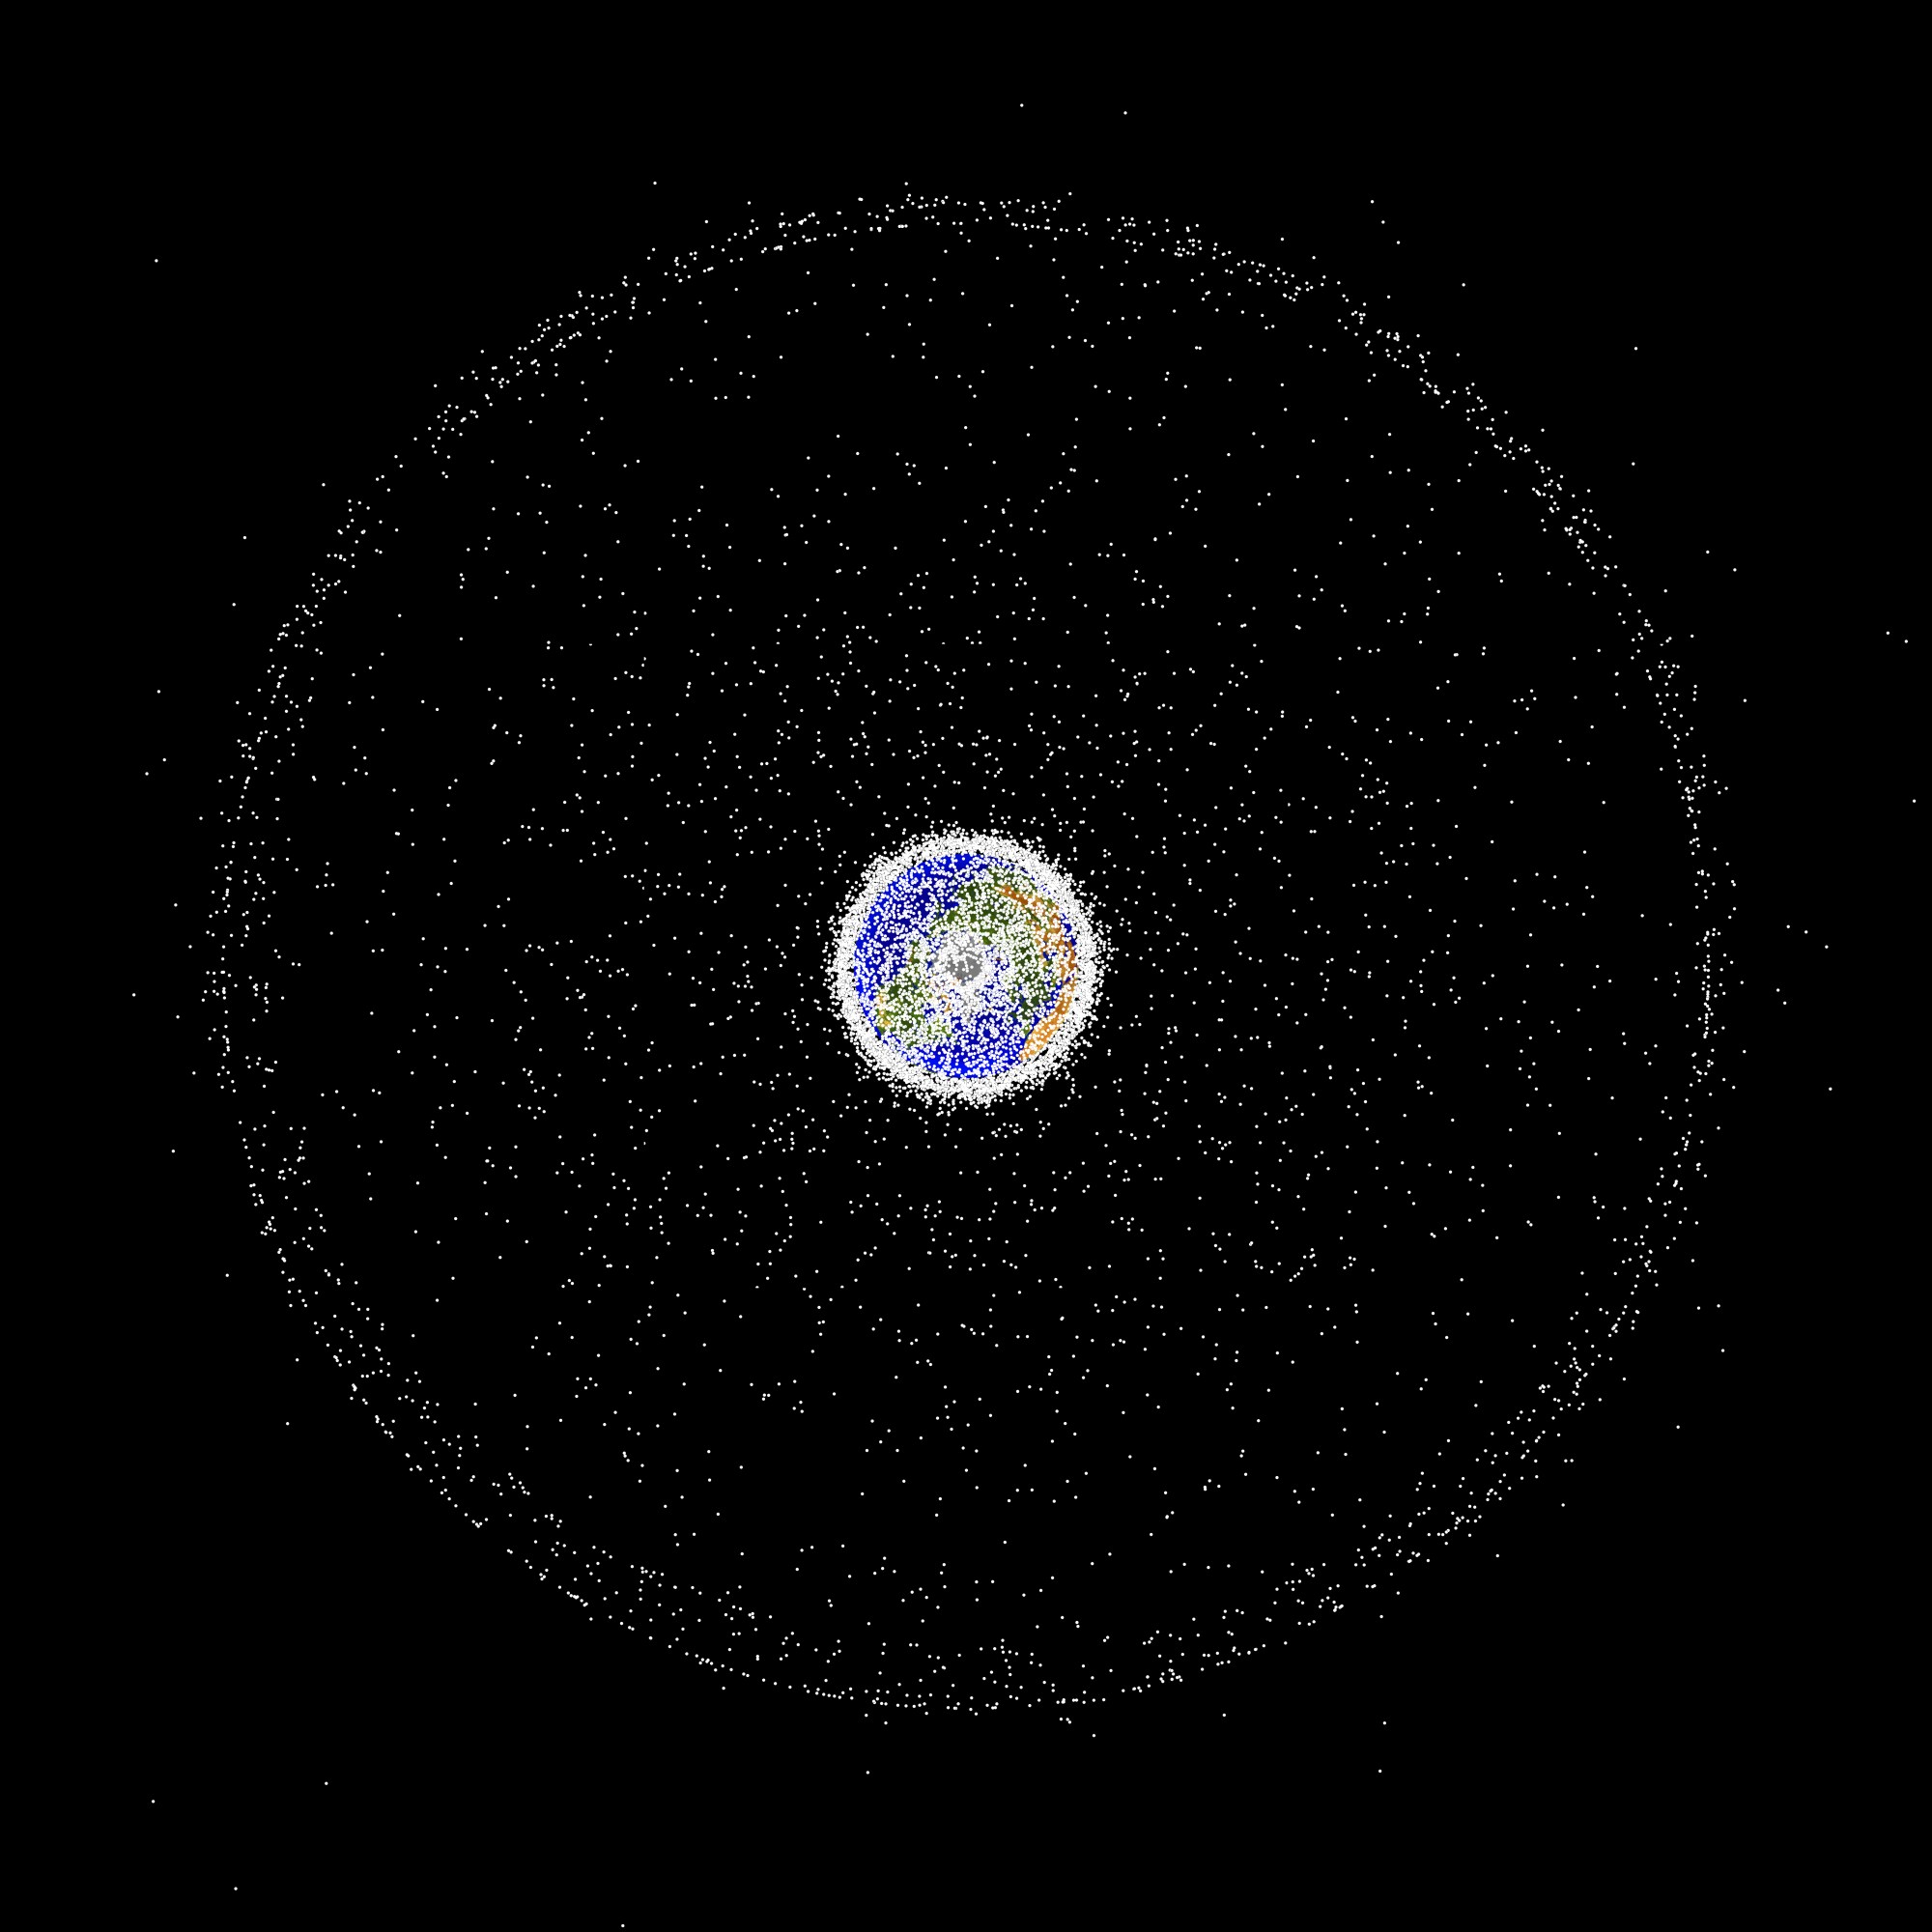 objects in low earth orbit